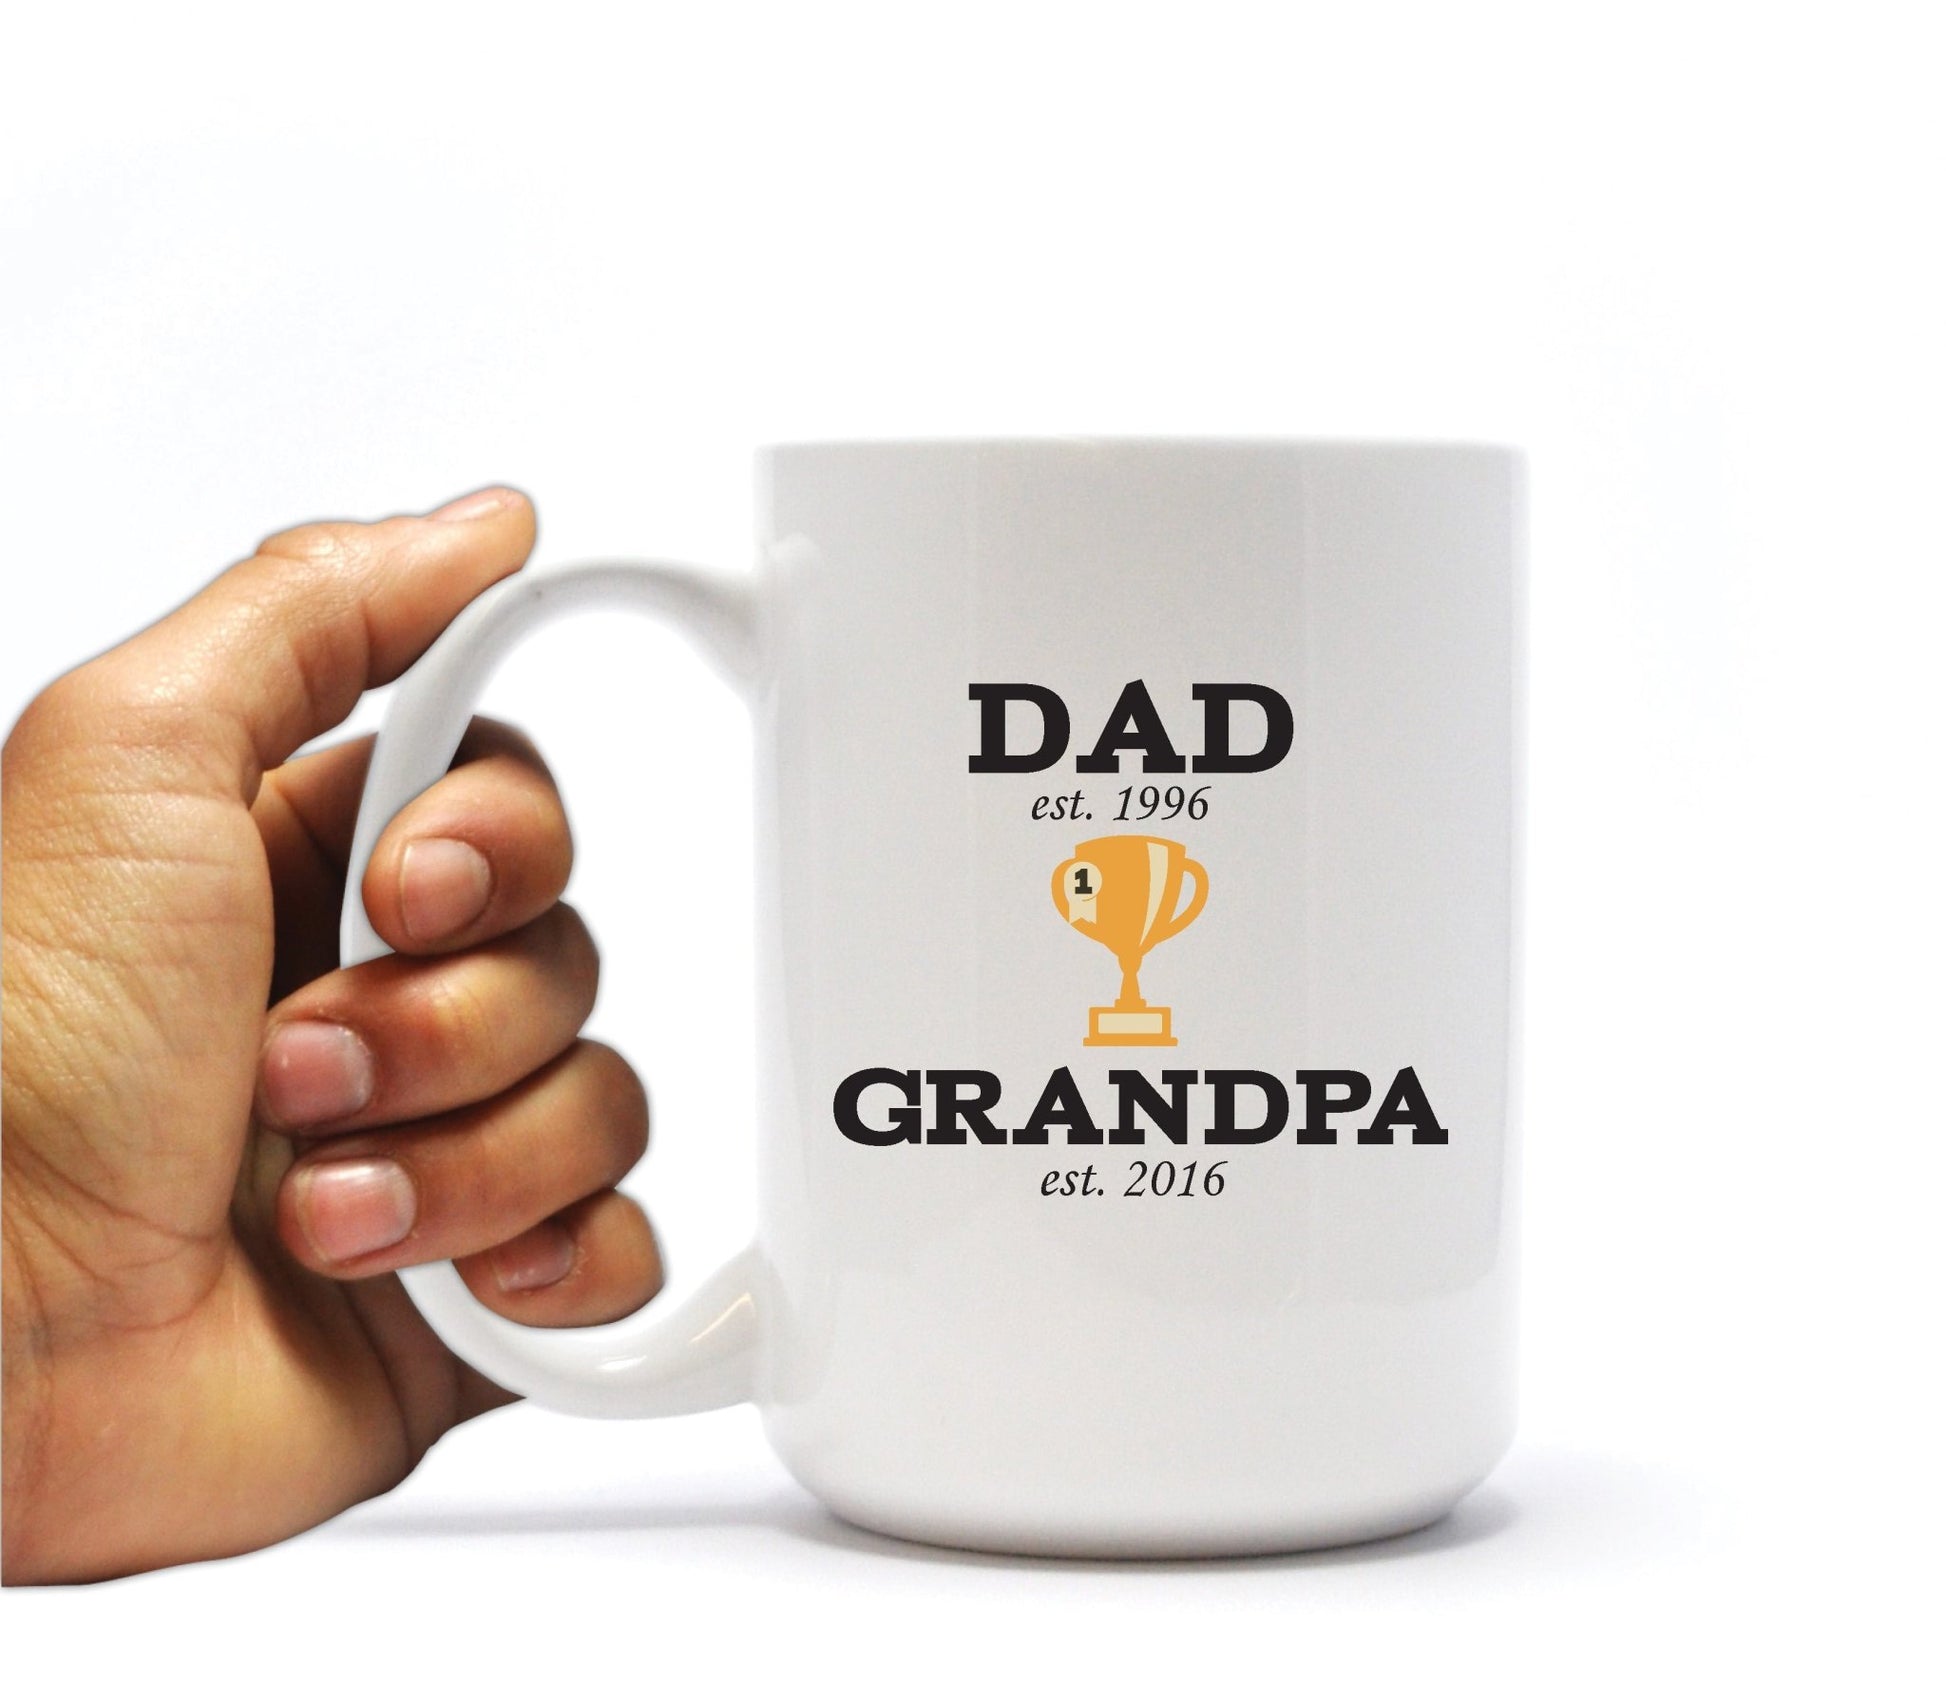 grandpa coffee mug